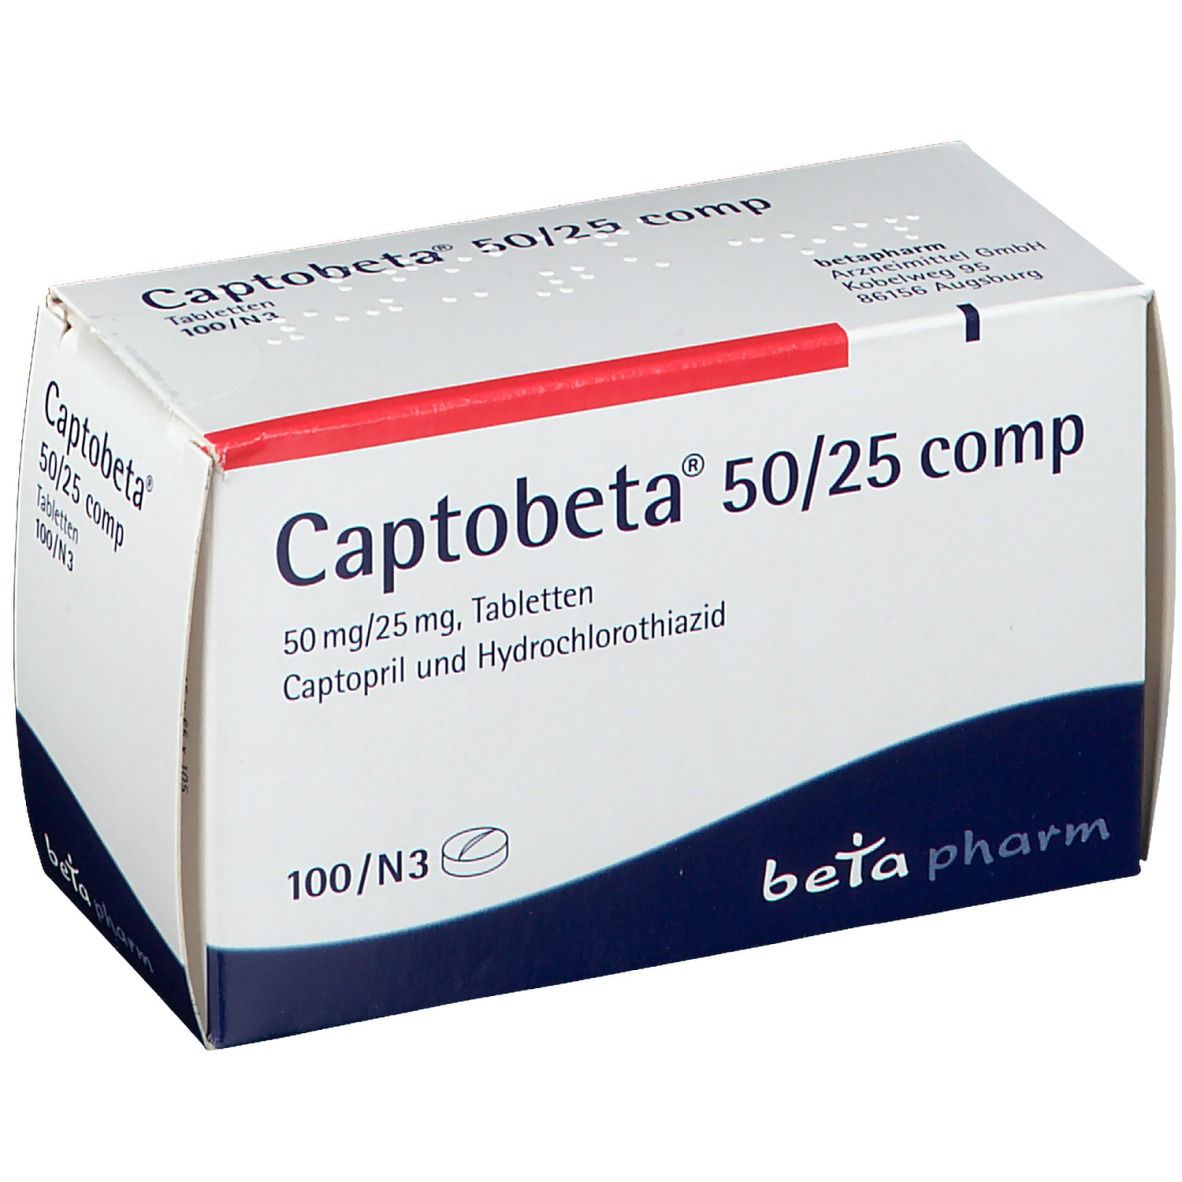 Captobeta® 50/25 comp